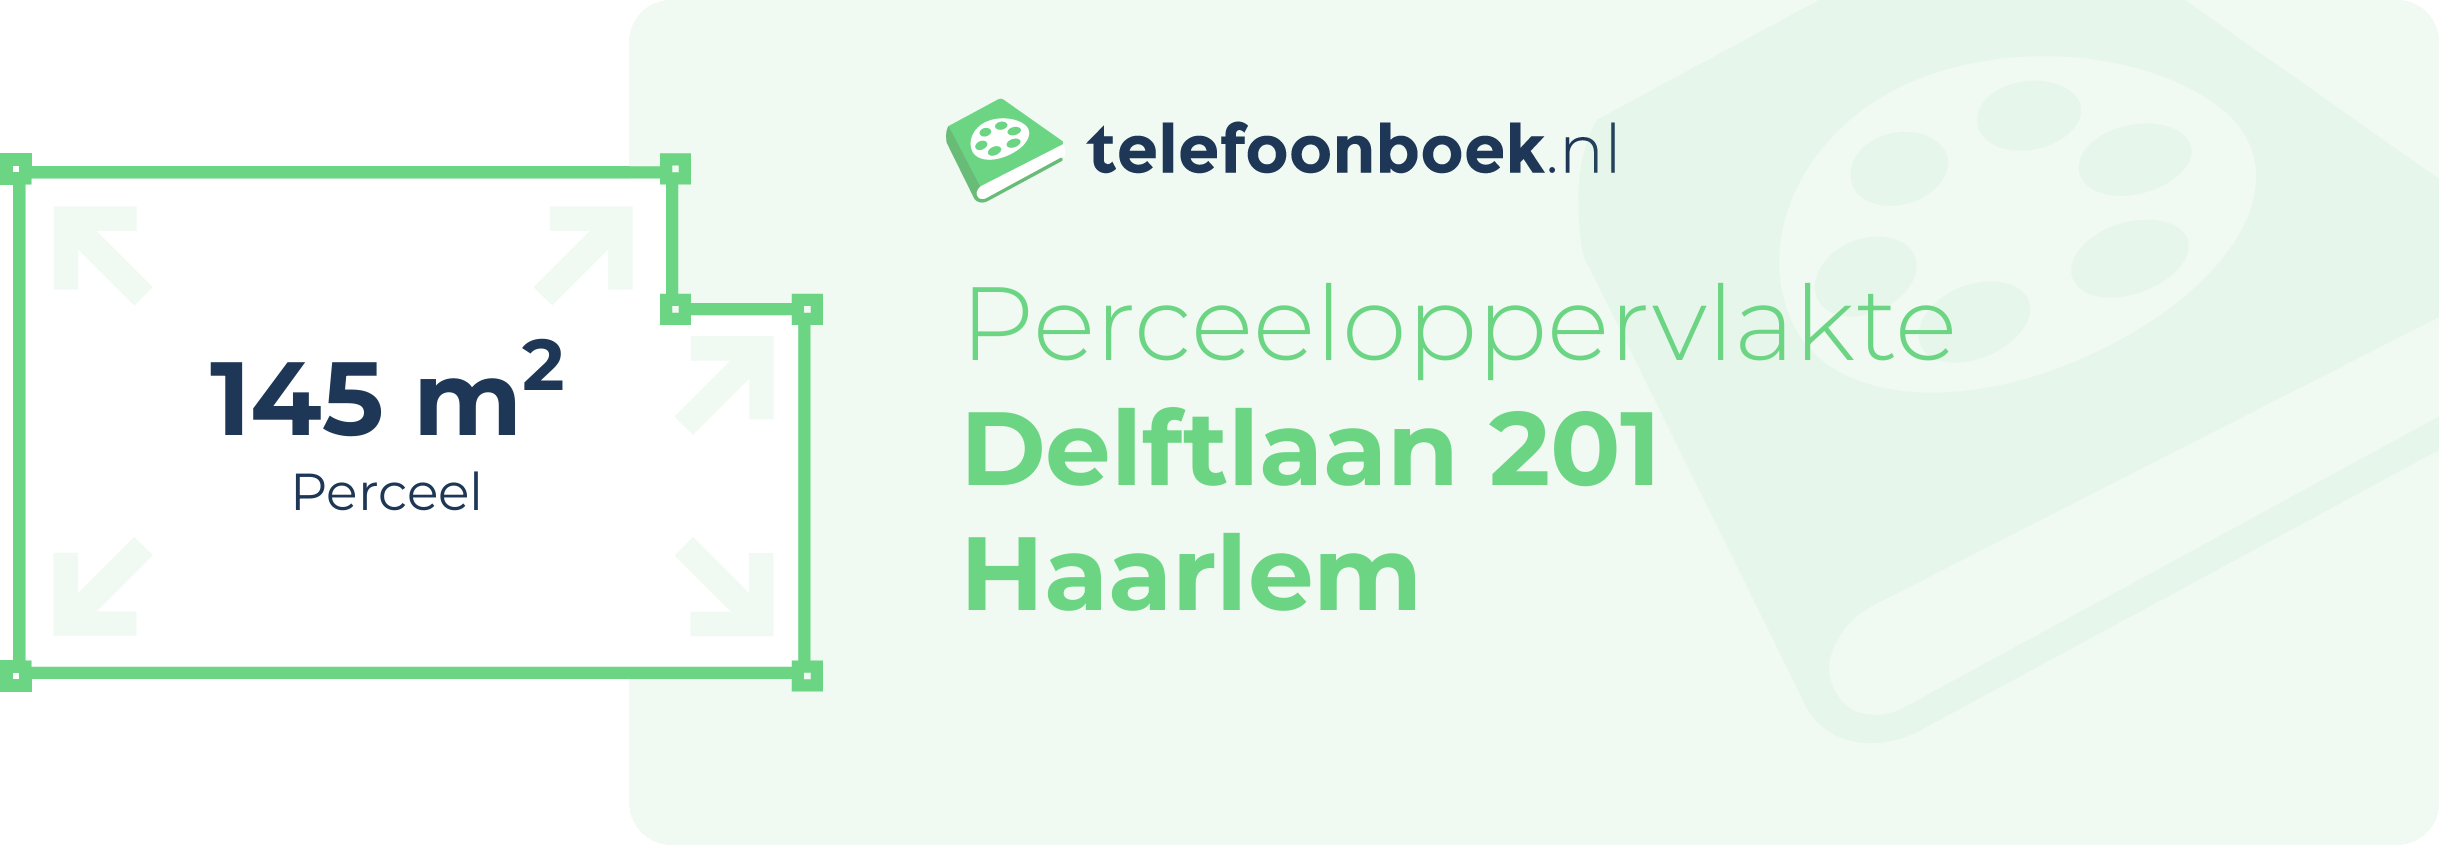 Perceeloppervlakte Delftlaan 201 Haarlem